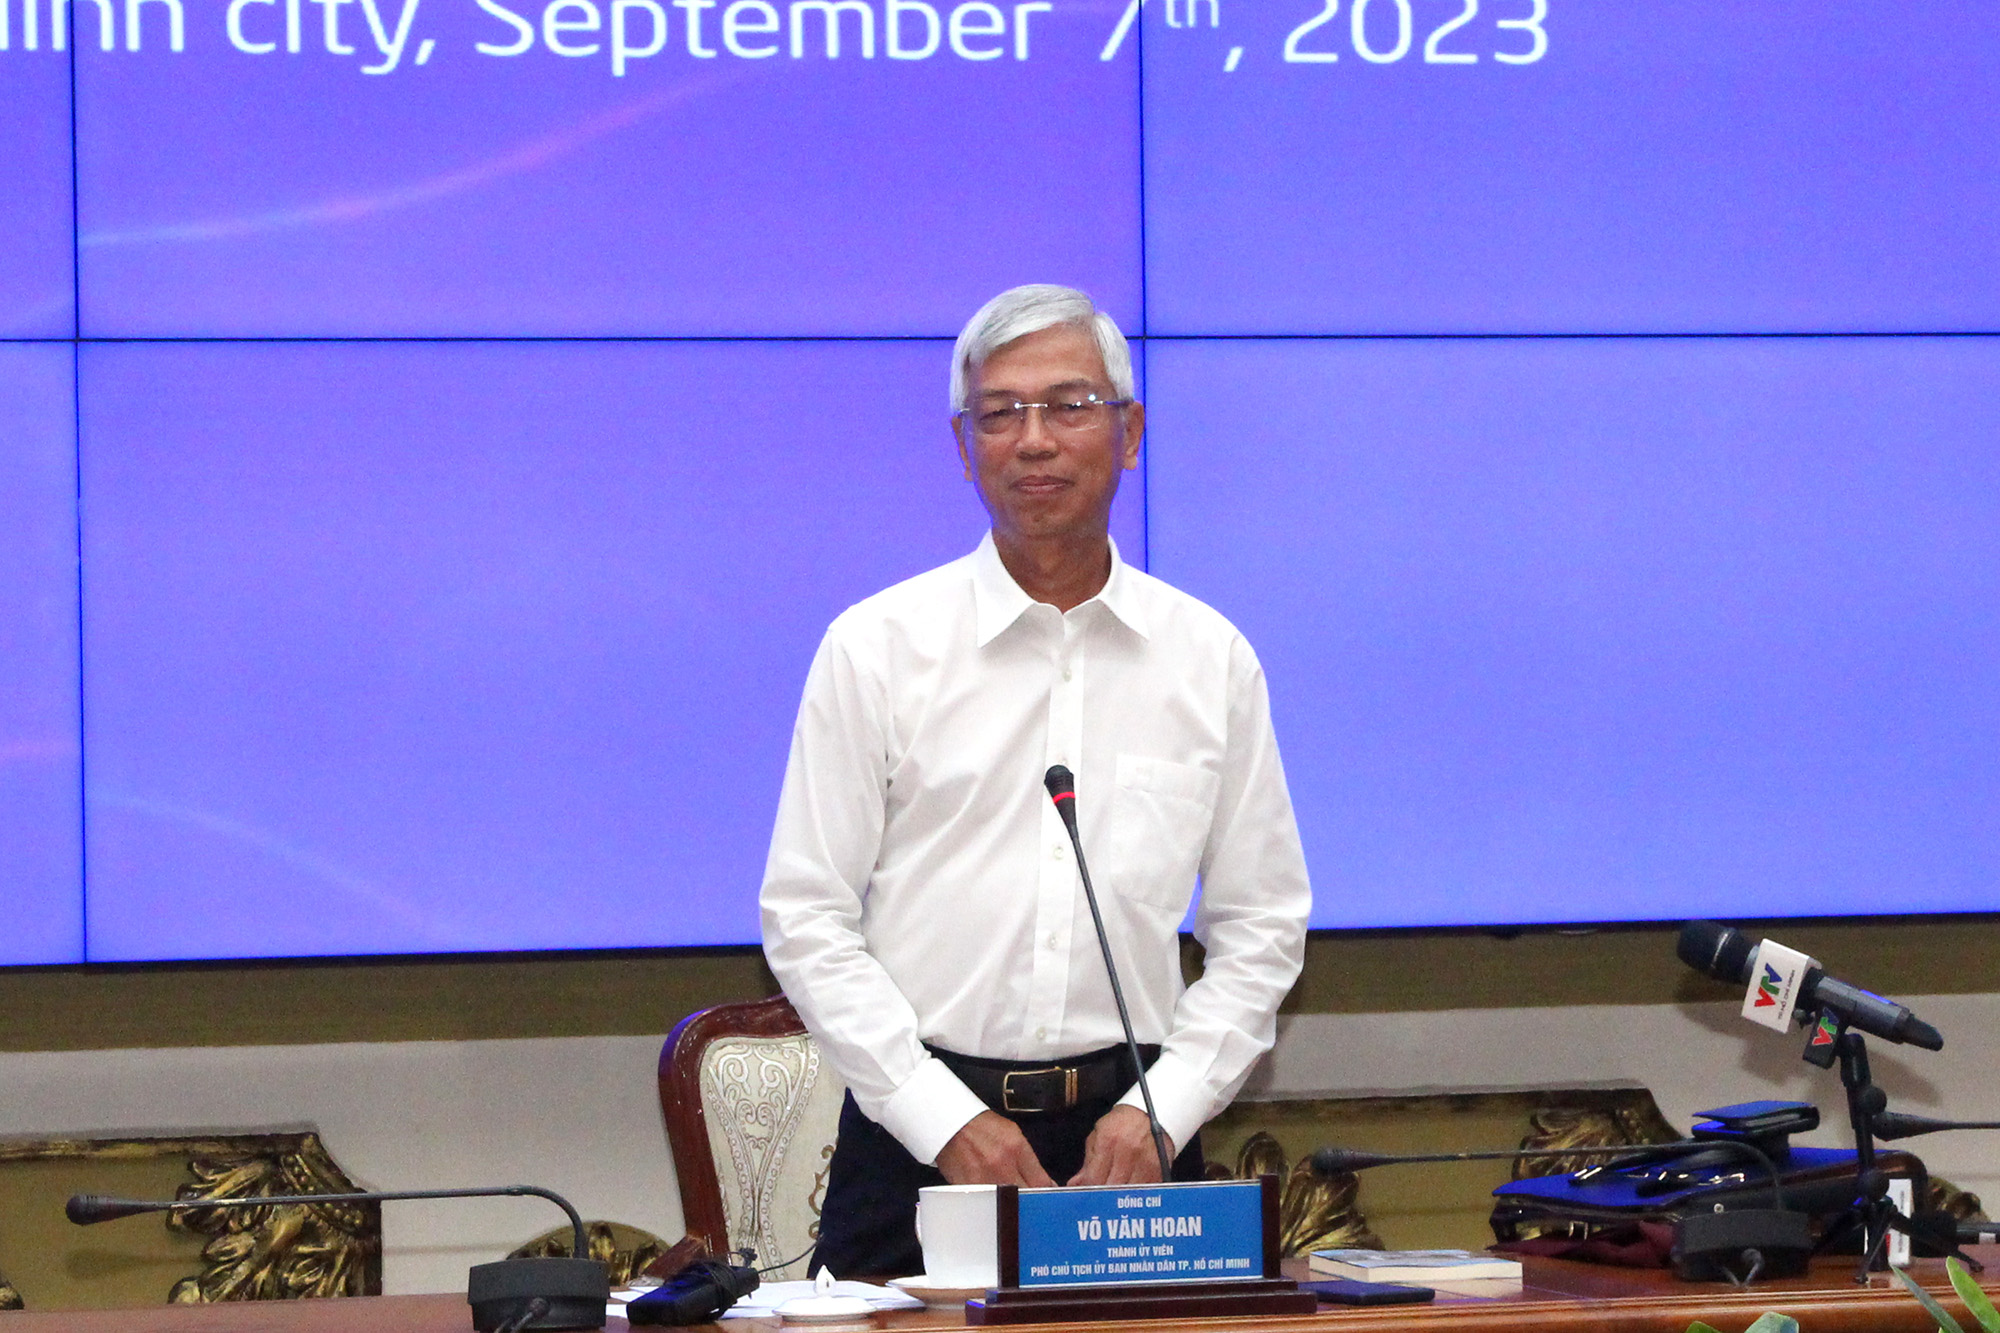 Đồng chí Võ Văn Hoan, Phó Chủ tịch UBND TP. Hồ Chí Minh chủ trì buổi họp báo.